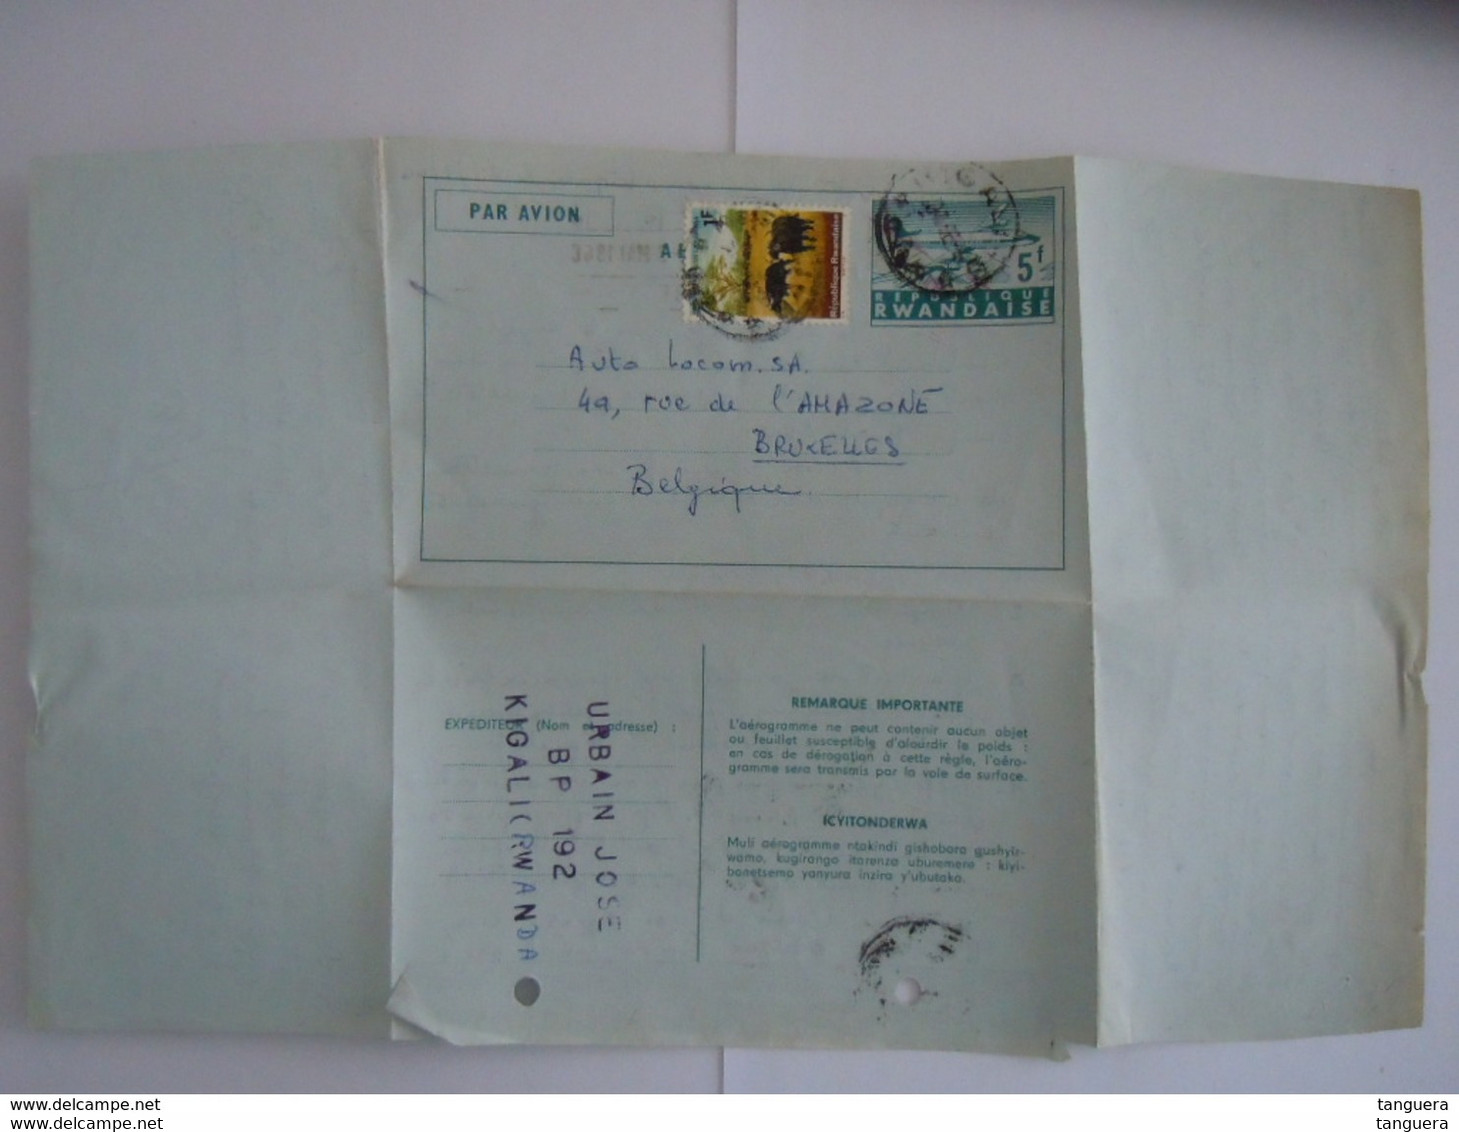 Republique Rwandaise Entier Postal Par Avion Aerogramme 1966 5f + 1f Kigali Demande D'info Sur Achat Fiat 850 Bruxelles - Storia Postale